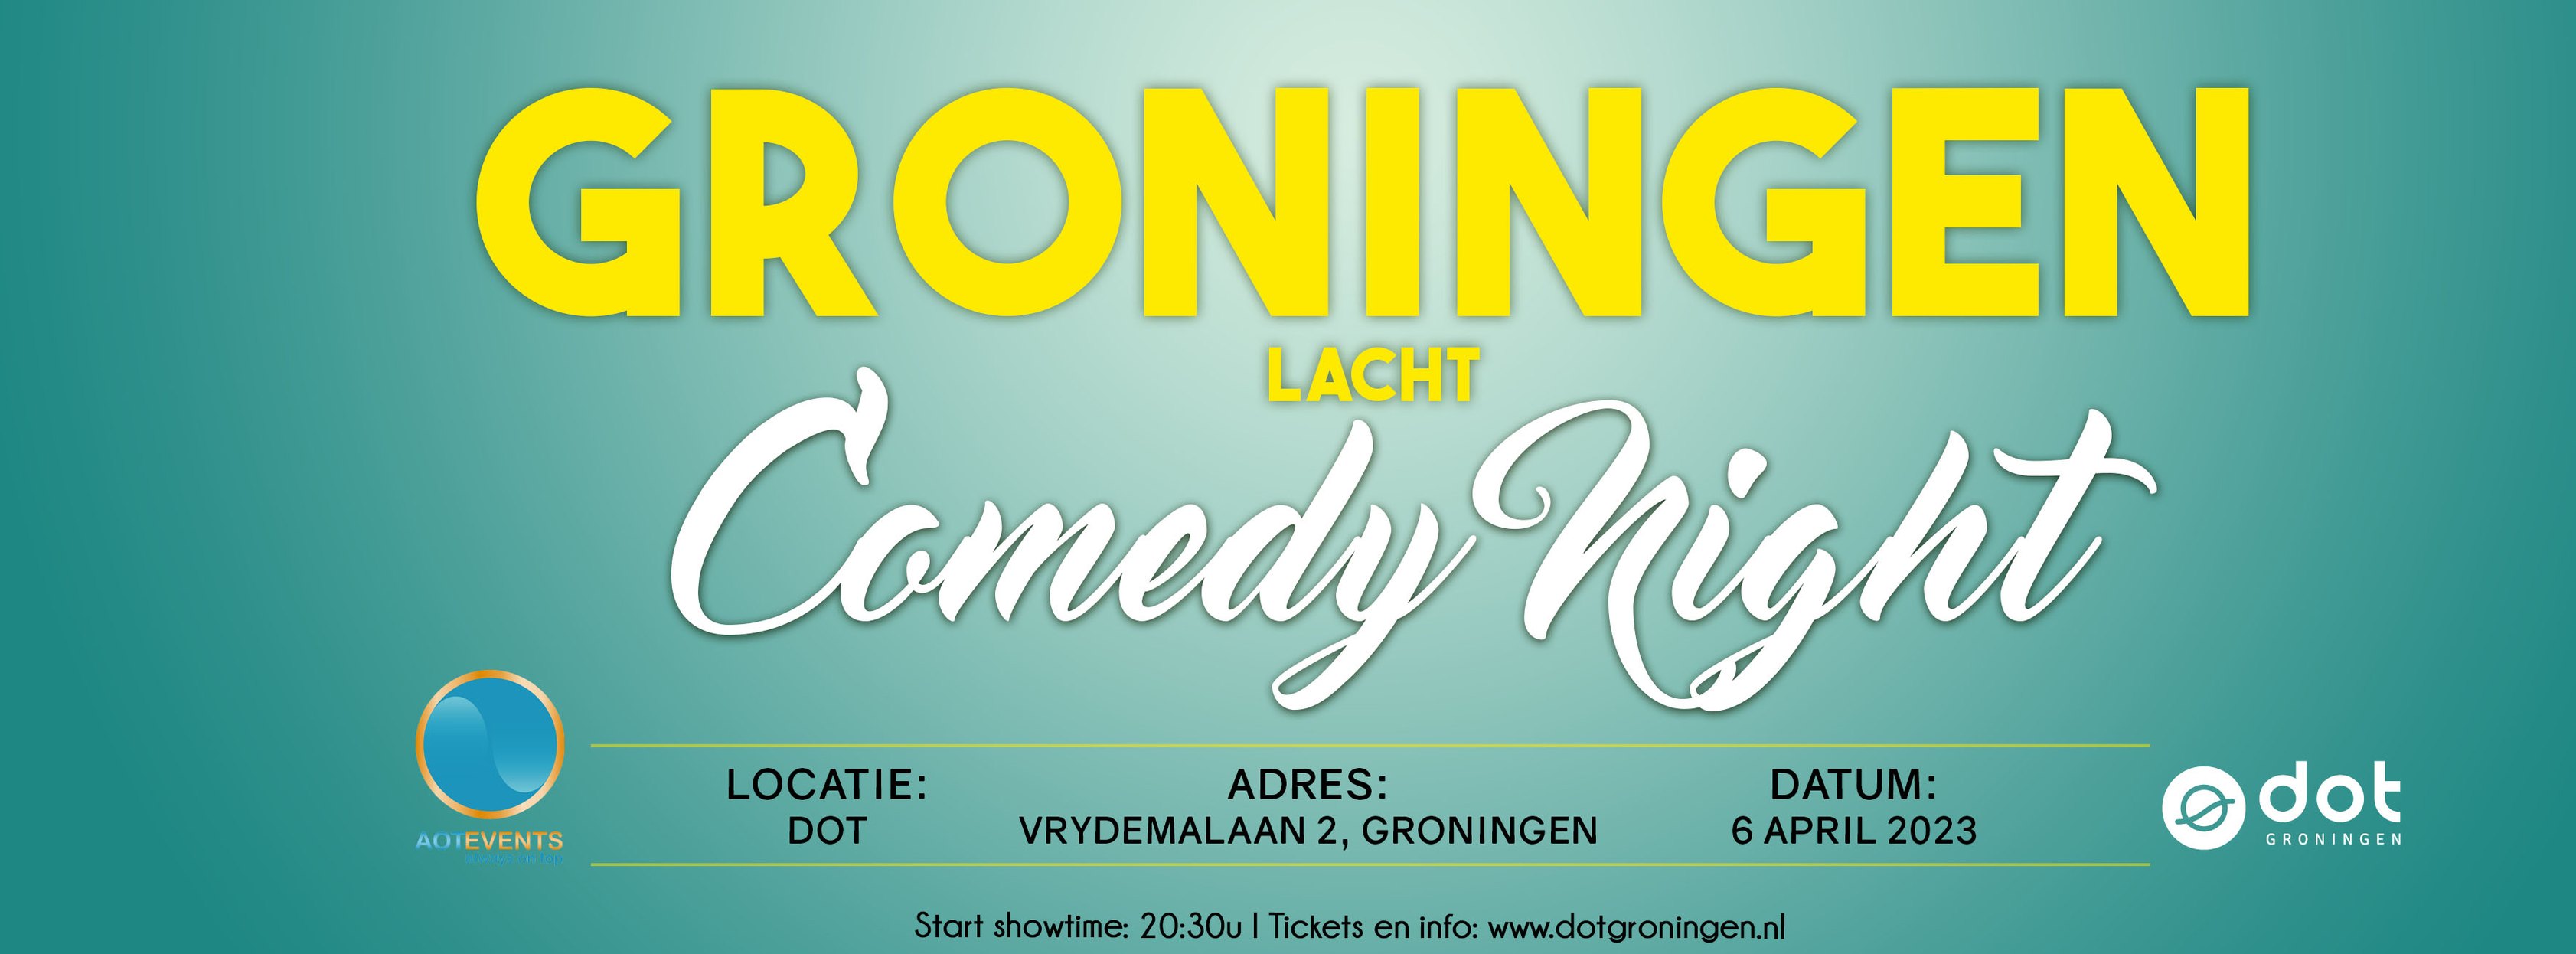 Ticket kopen voor evenement Groningen Lacht: Comedy Night